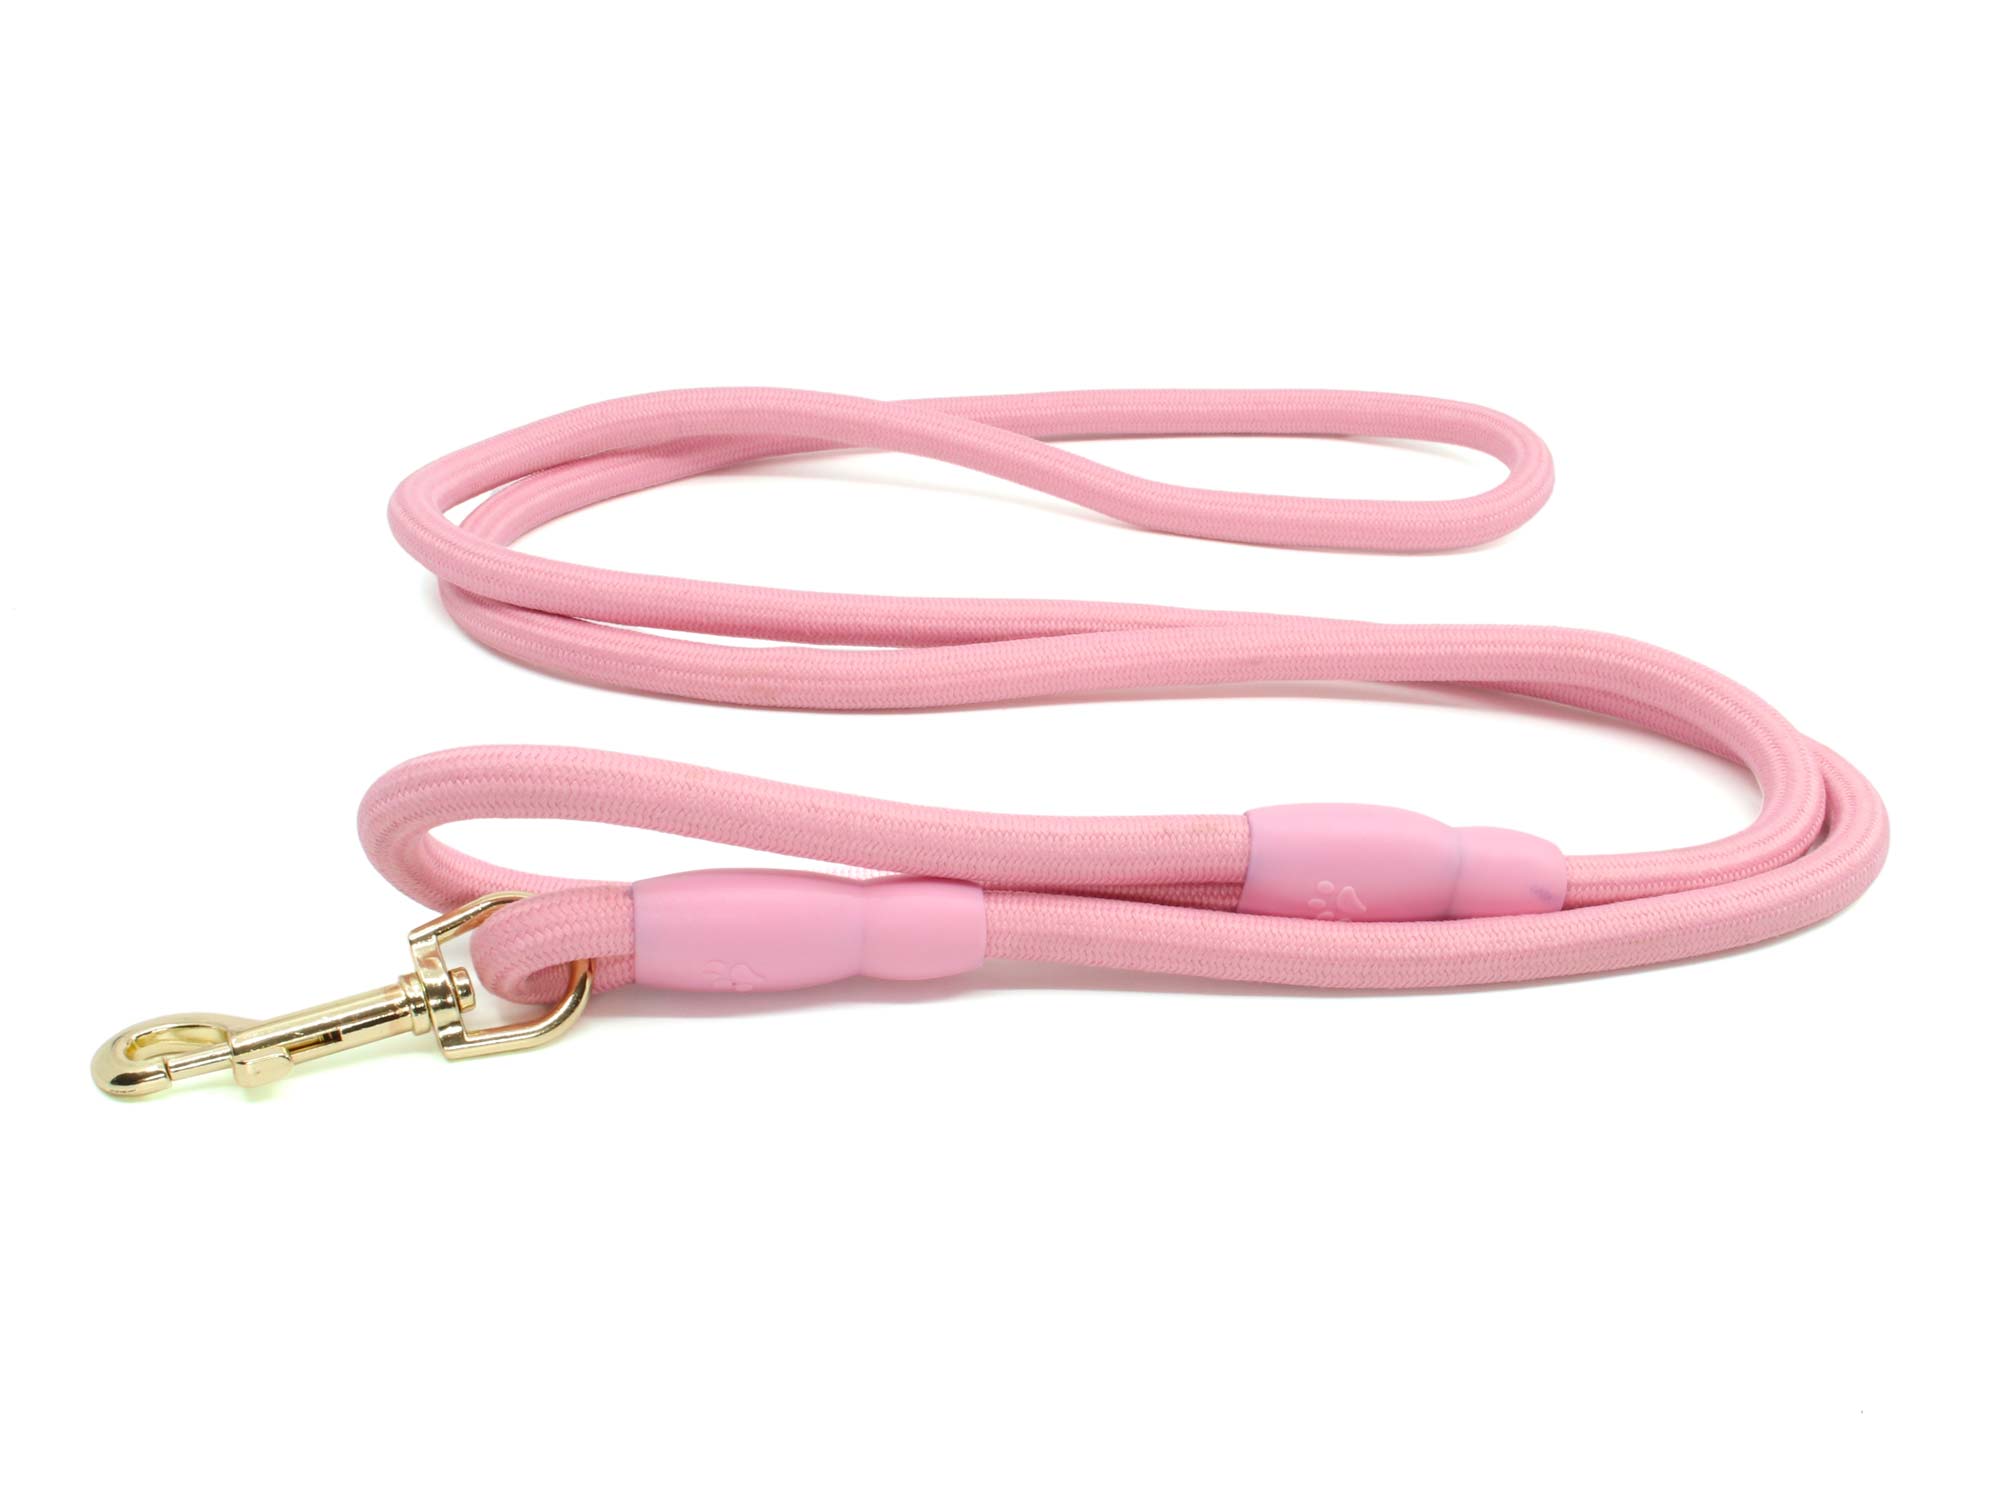 Vsepropejska Karo vodítko pro psa | 190 cm Barva: Růžová, Délka vodítka: 190 cm, Šířka vodítka: 1,2 cm